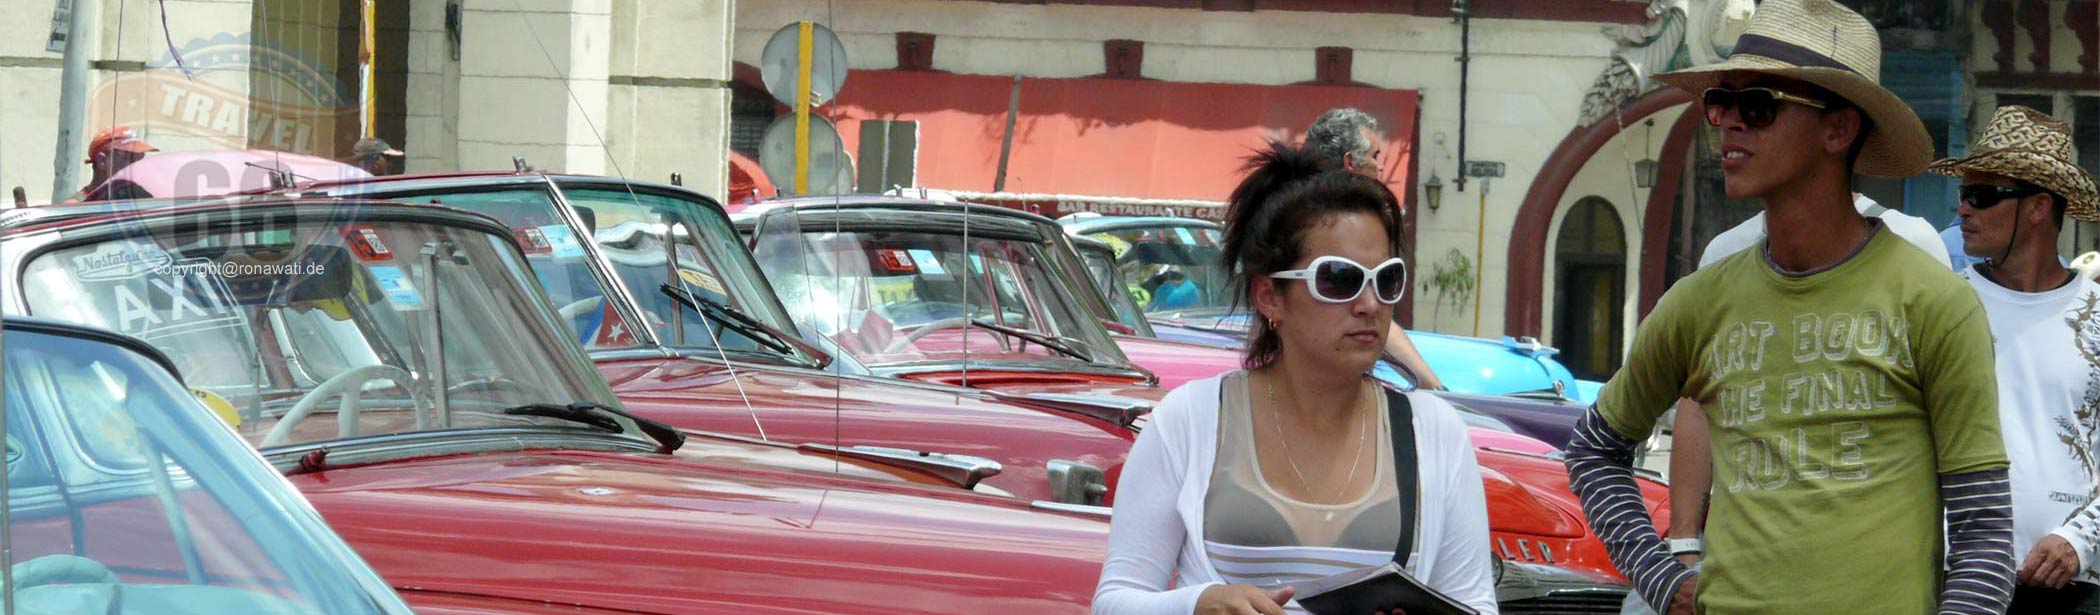 Havanna Streetlife